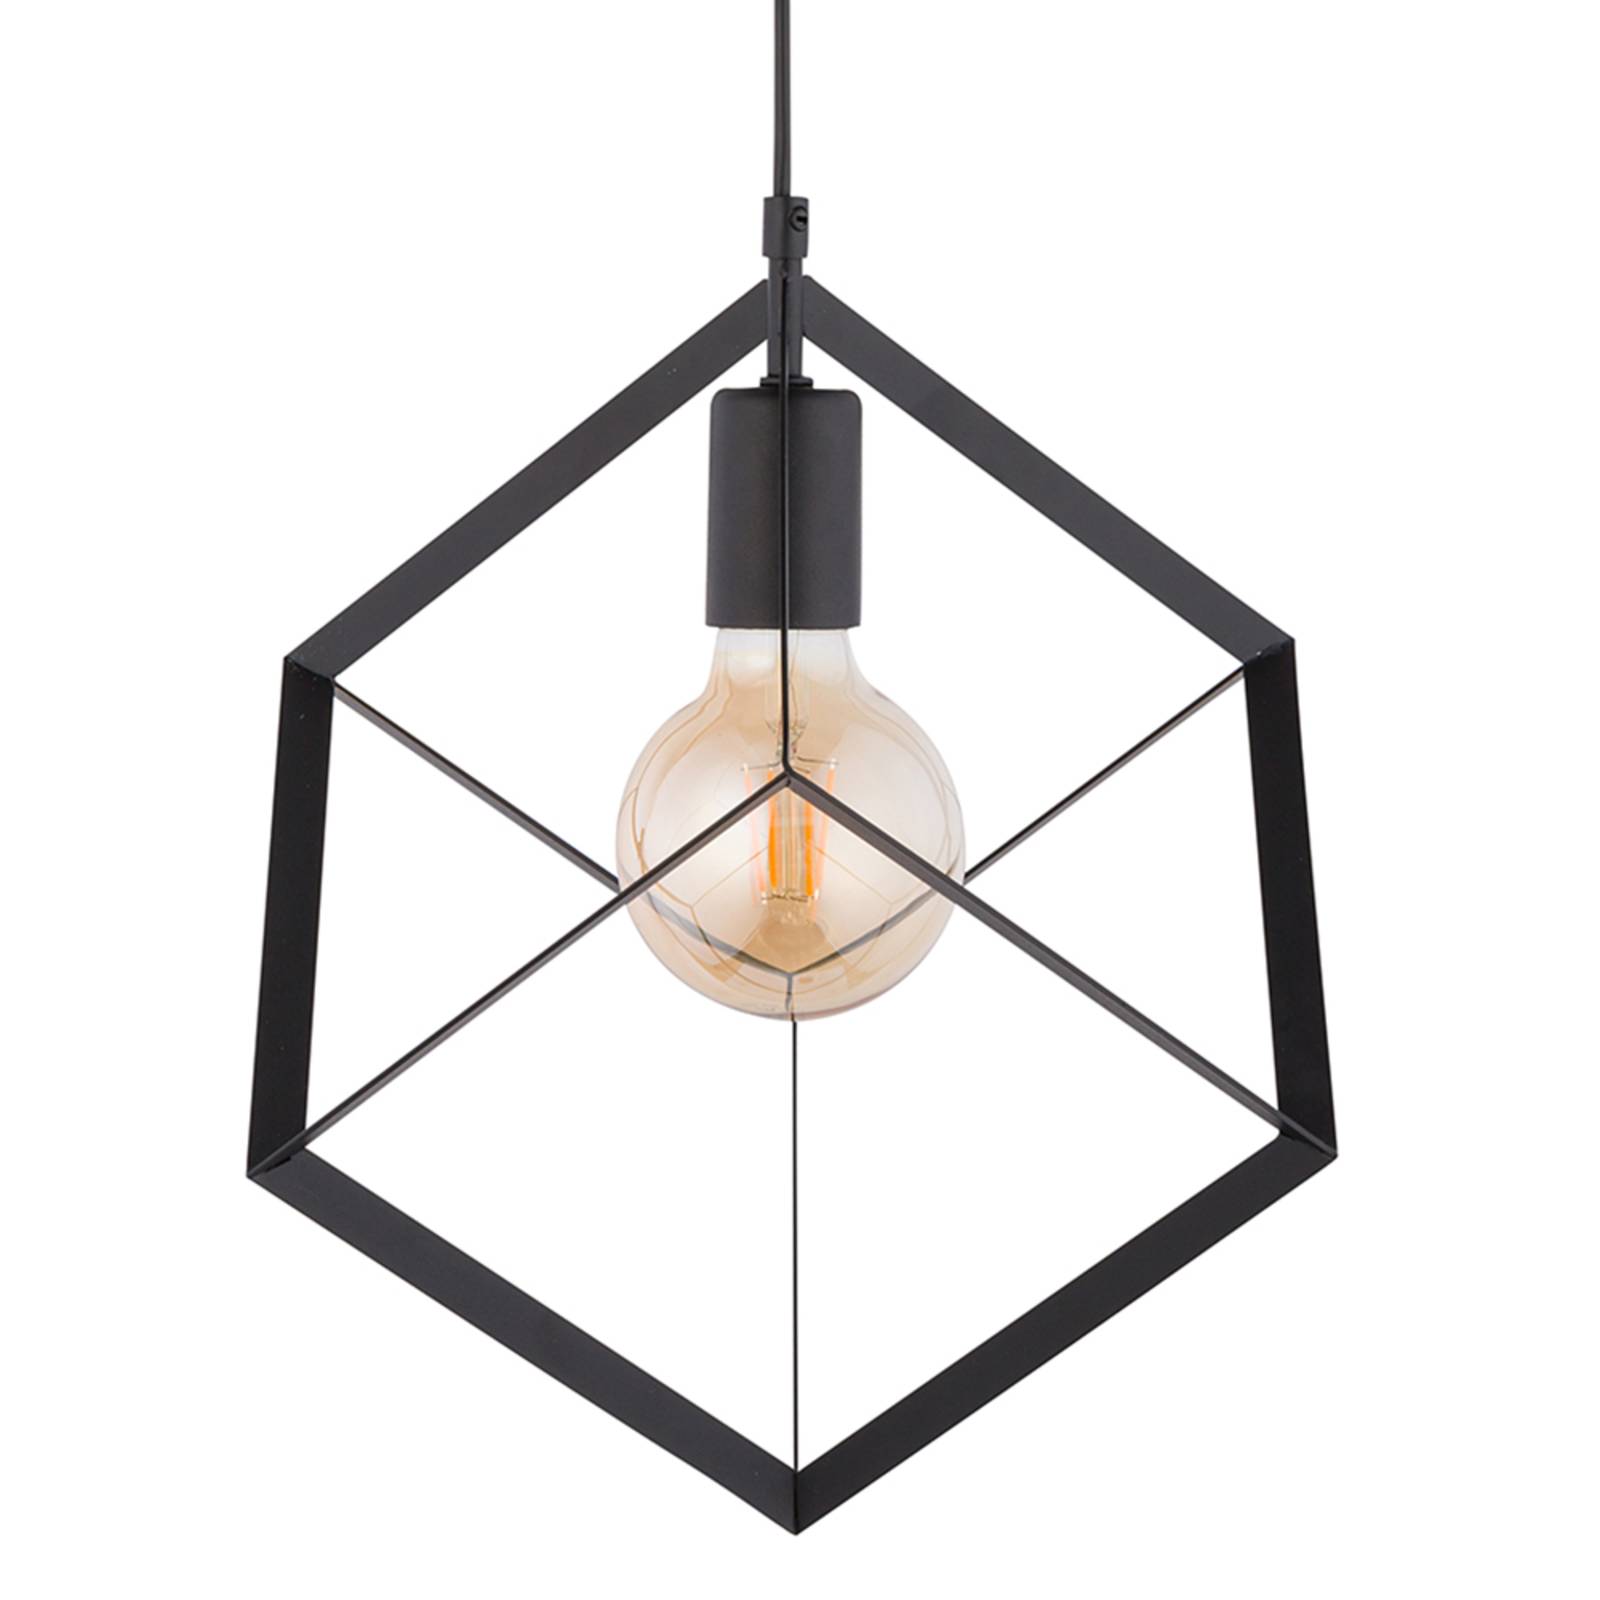 Hanglamp Cube 1 met metalen kubus, 1-lamp